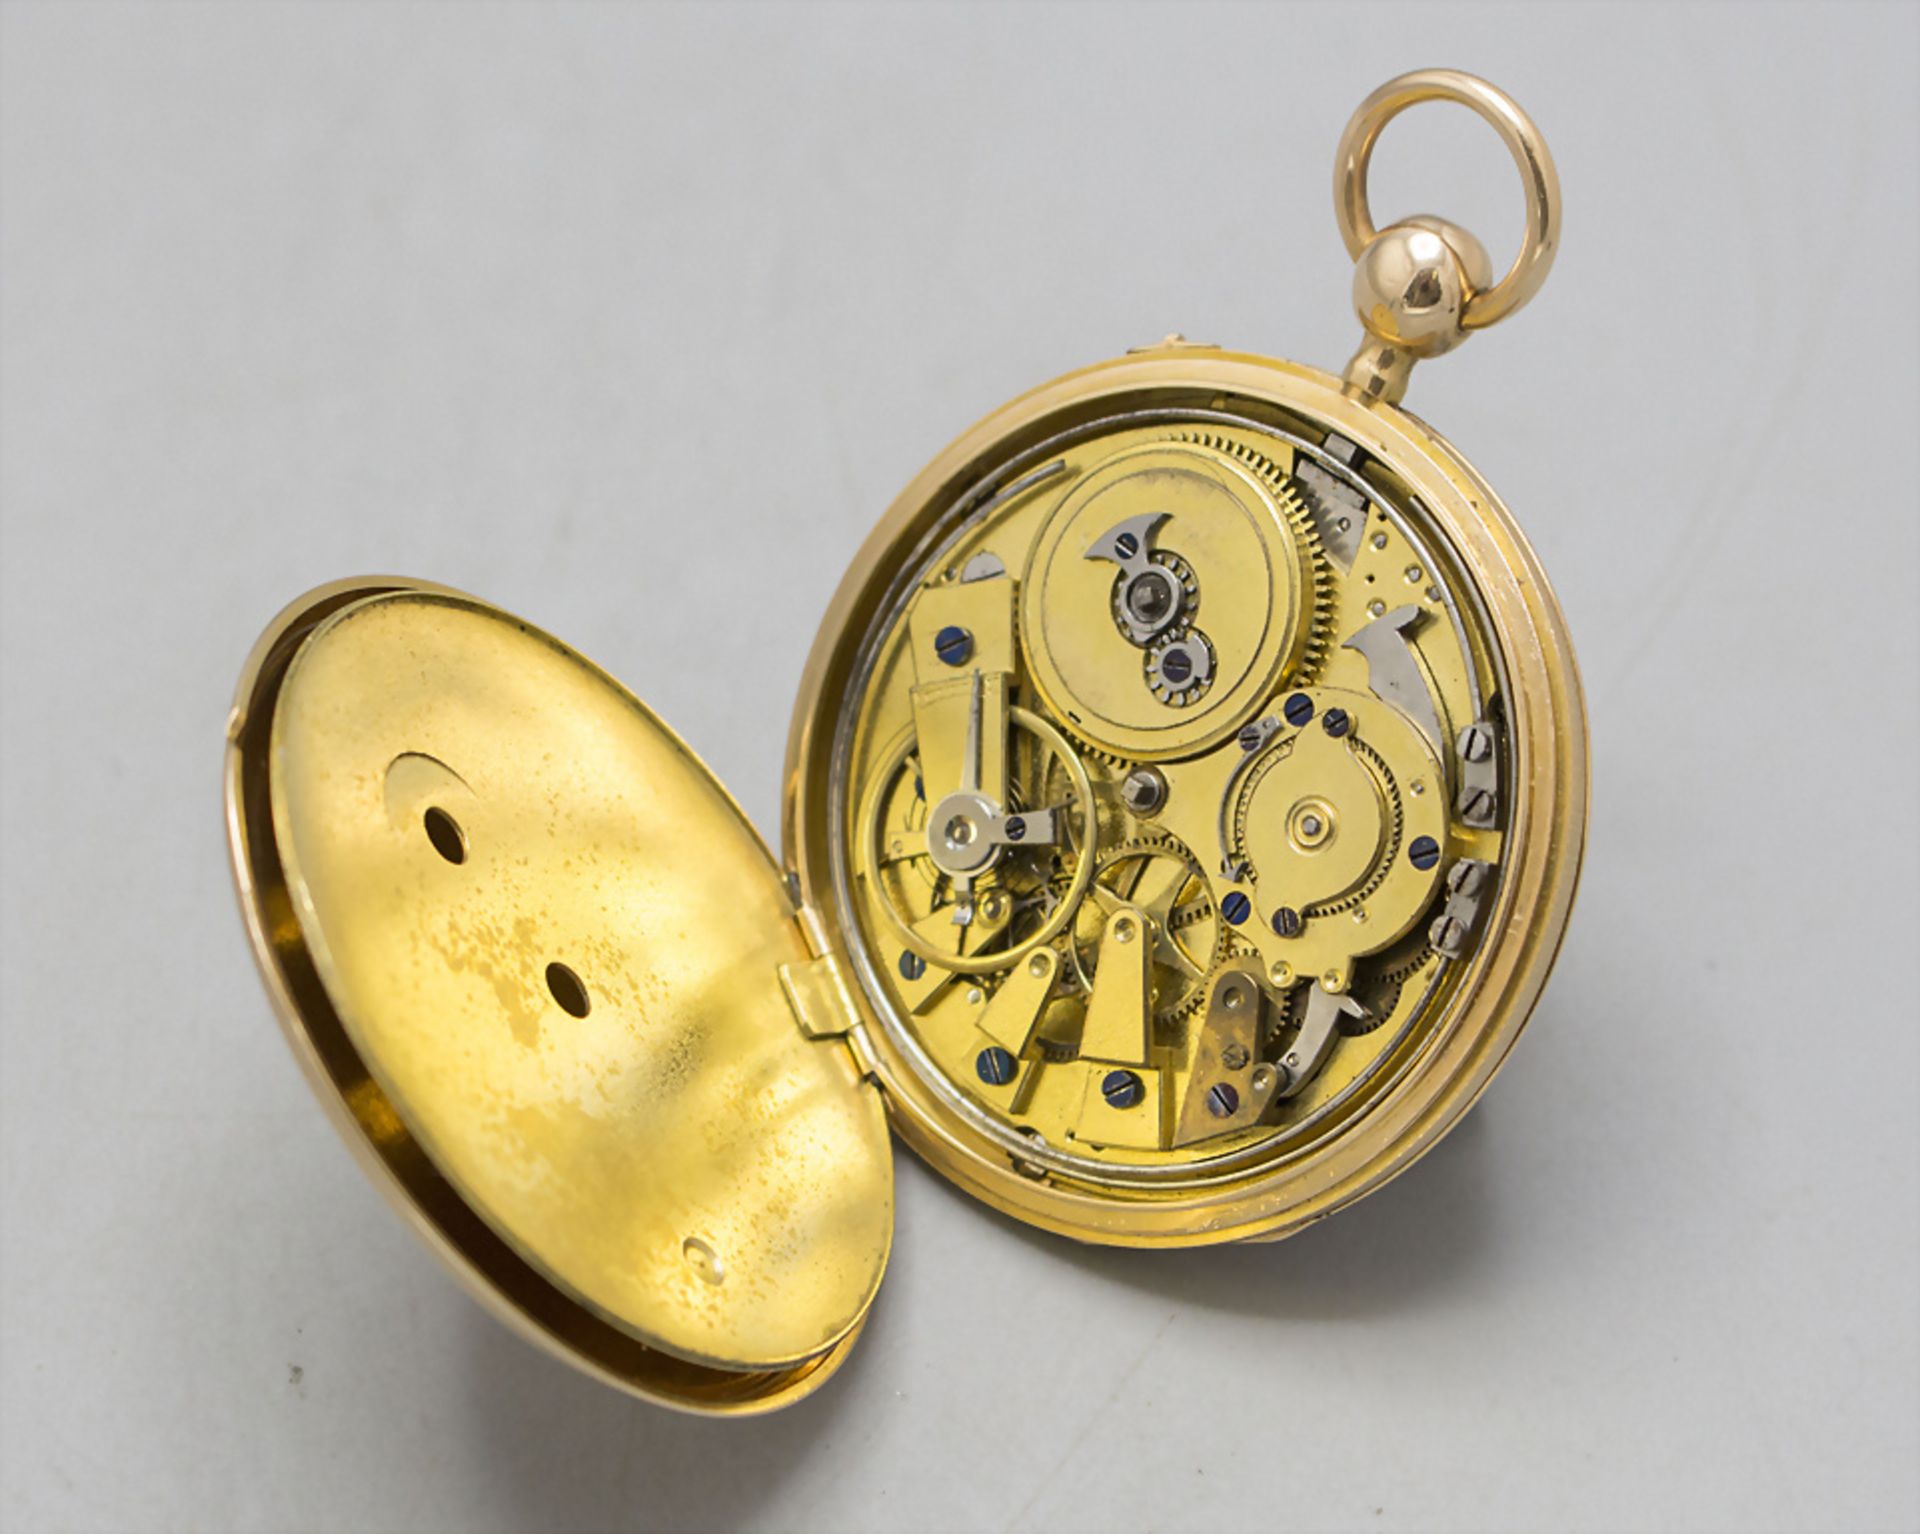 Offene Herrentaschenuhr ¼ Std.-Repetition / An 18 ct gold pocket watch, Schweiz/Swiss, um 1820 - Image 4 of 8